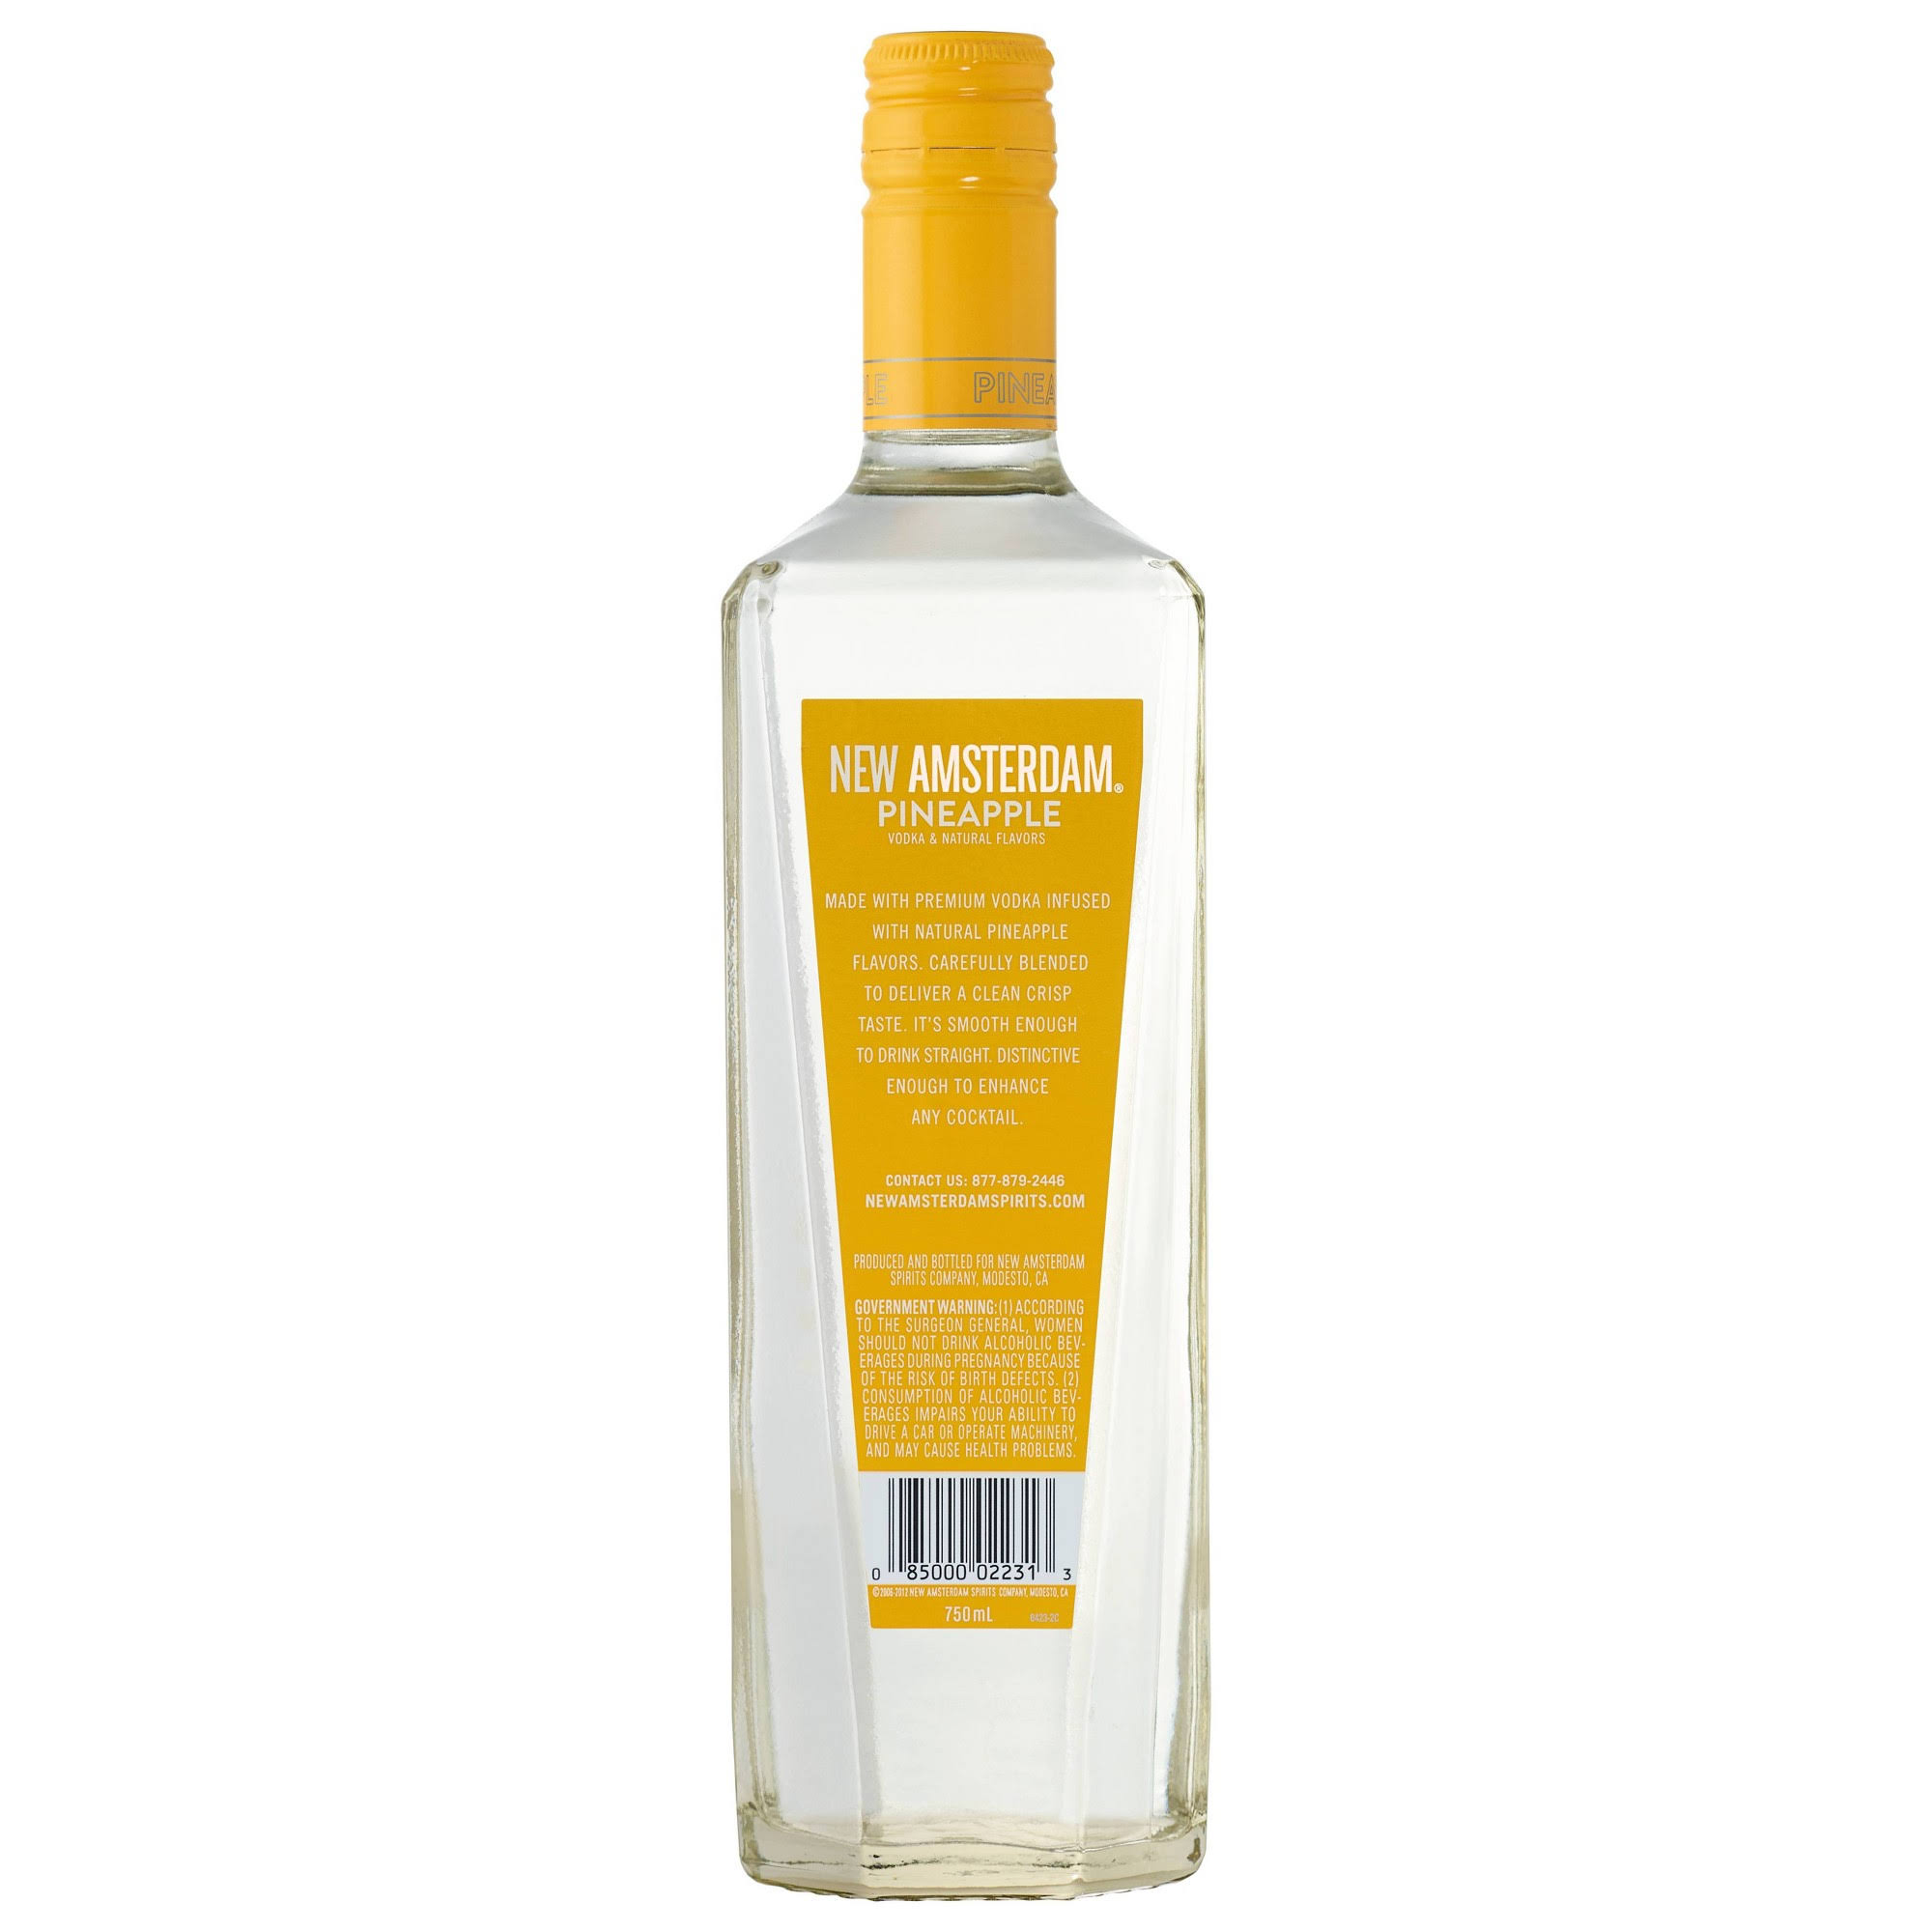 New Amsterdam Pineapple Vodka - 1.75 L bottle